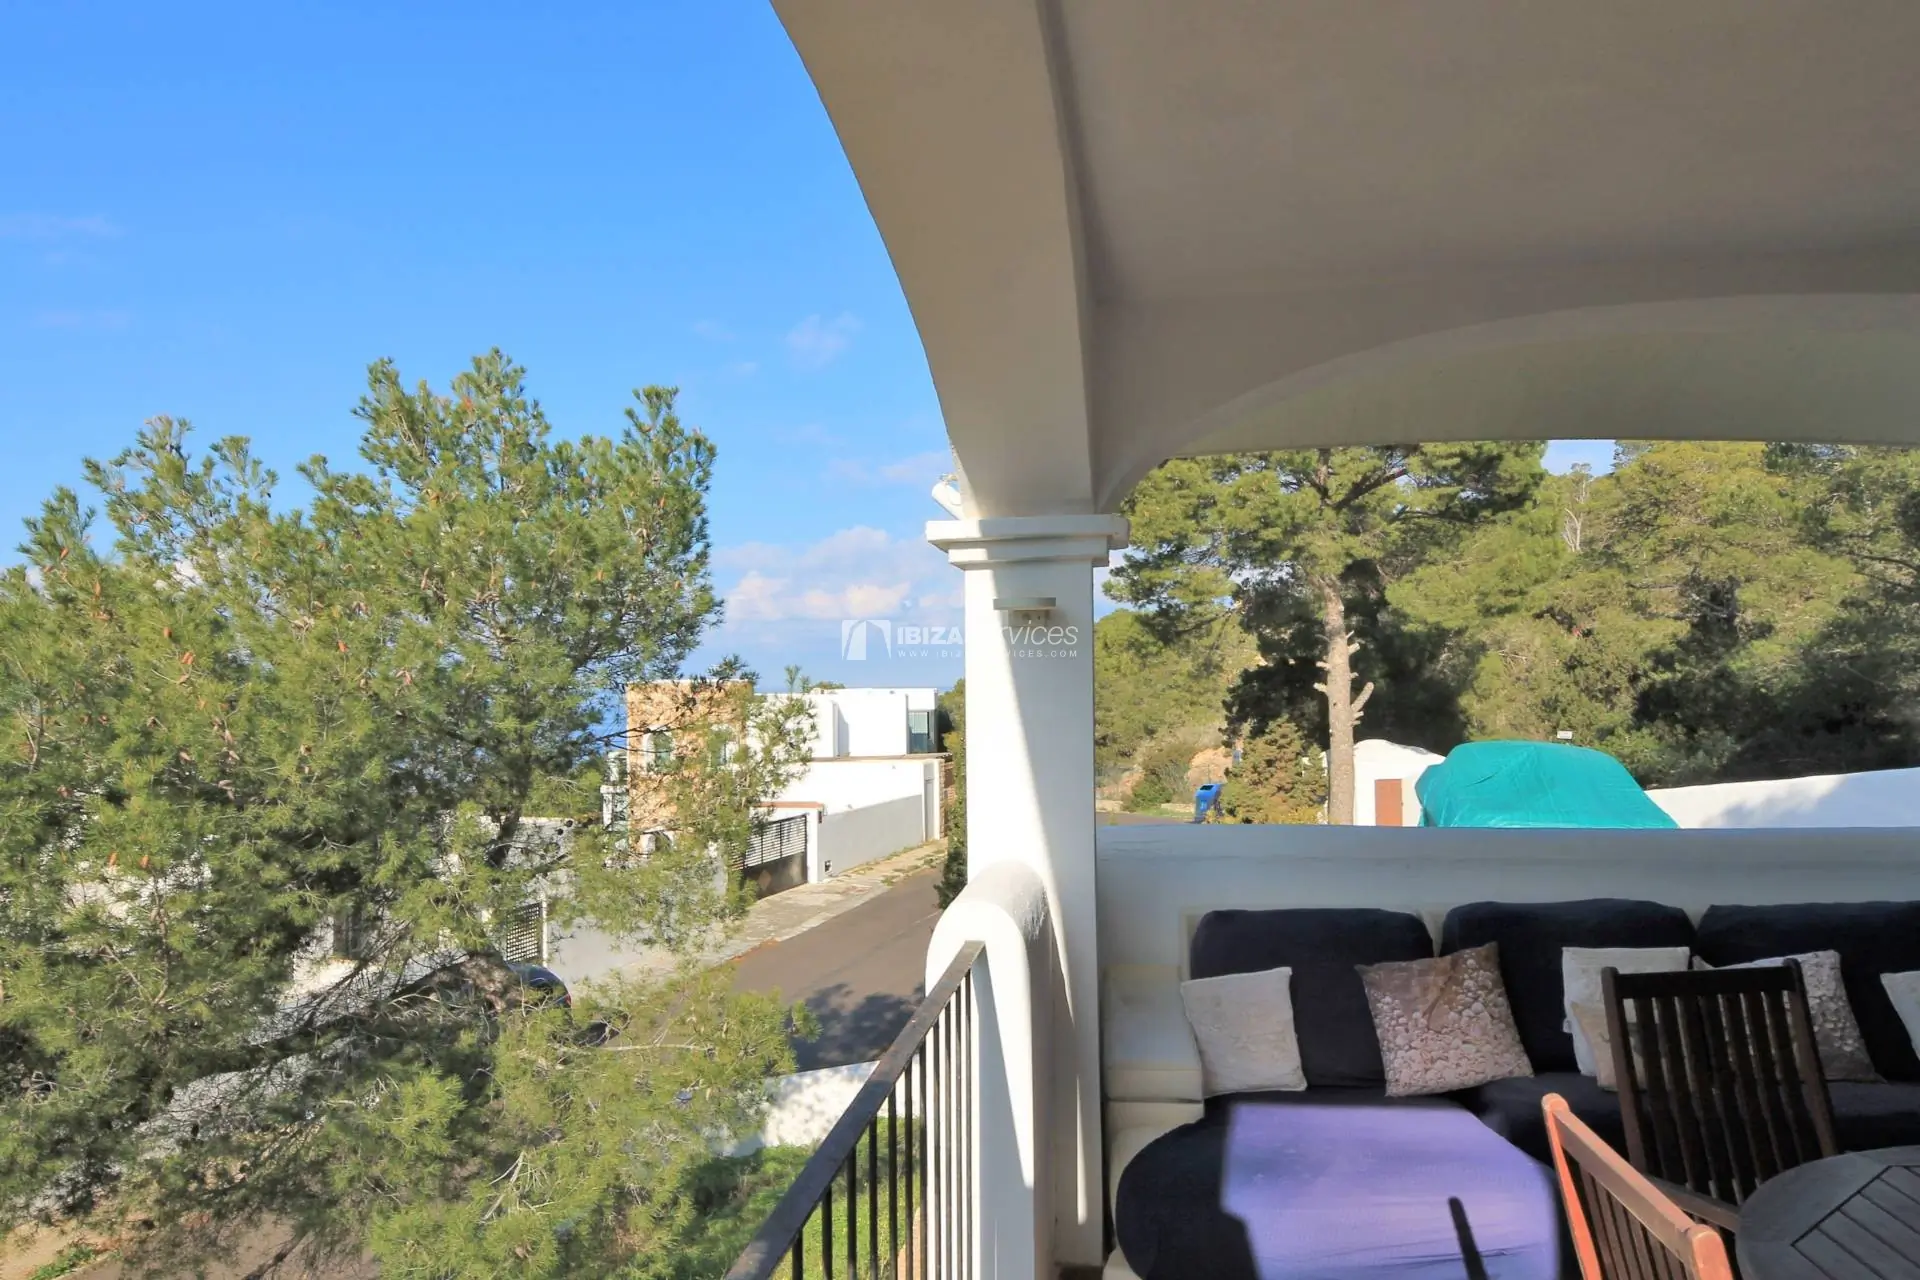 Encantadora casa adosada con parcela y vistas al mar cerca de la playa para comprar